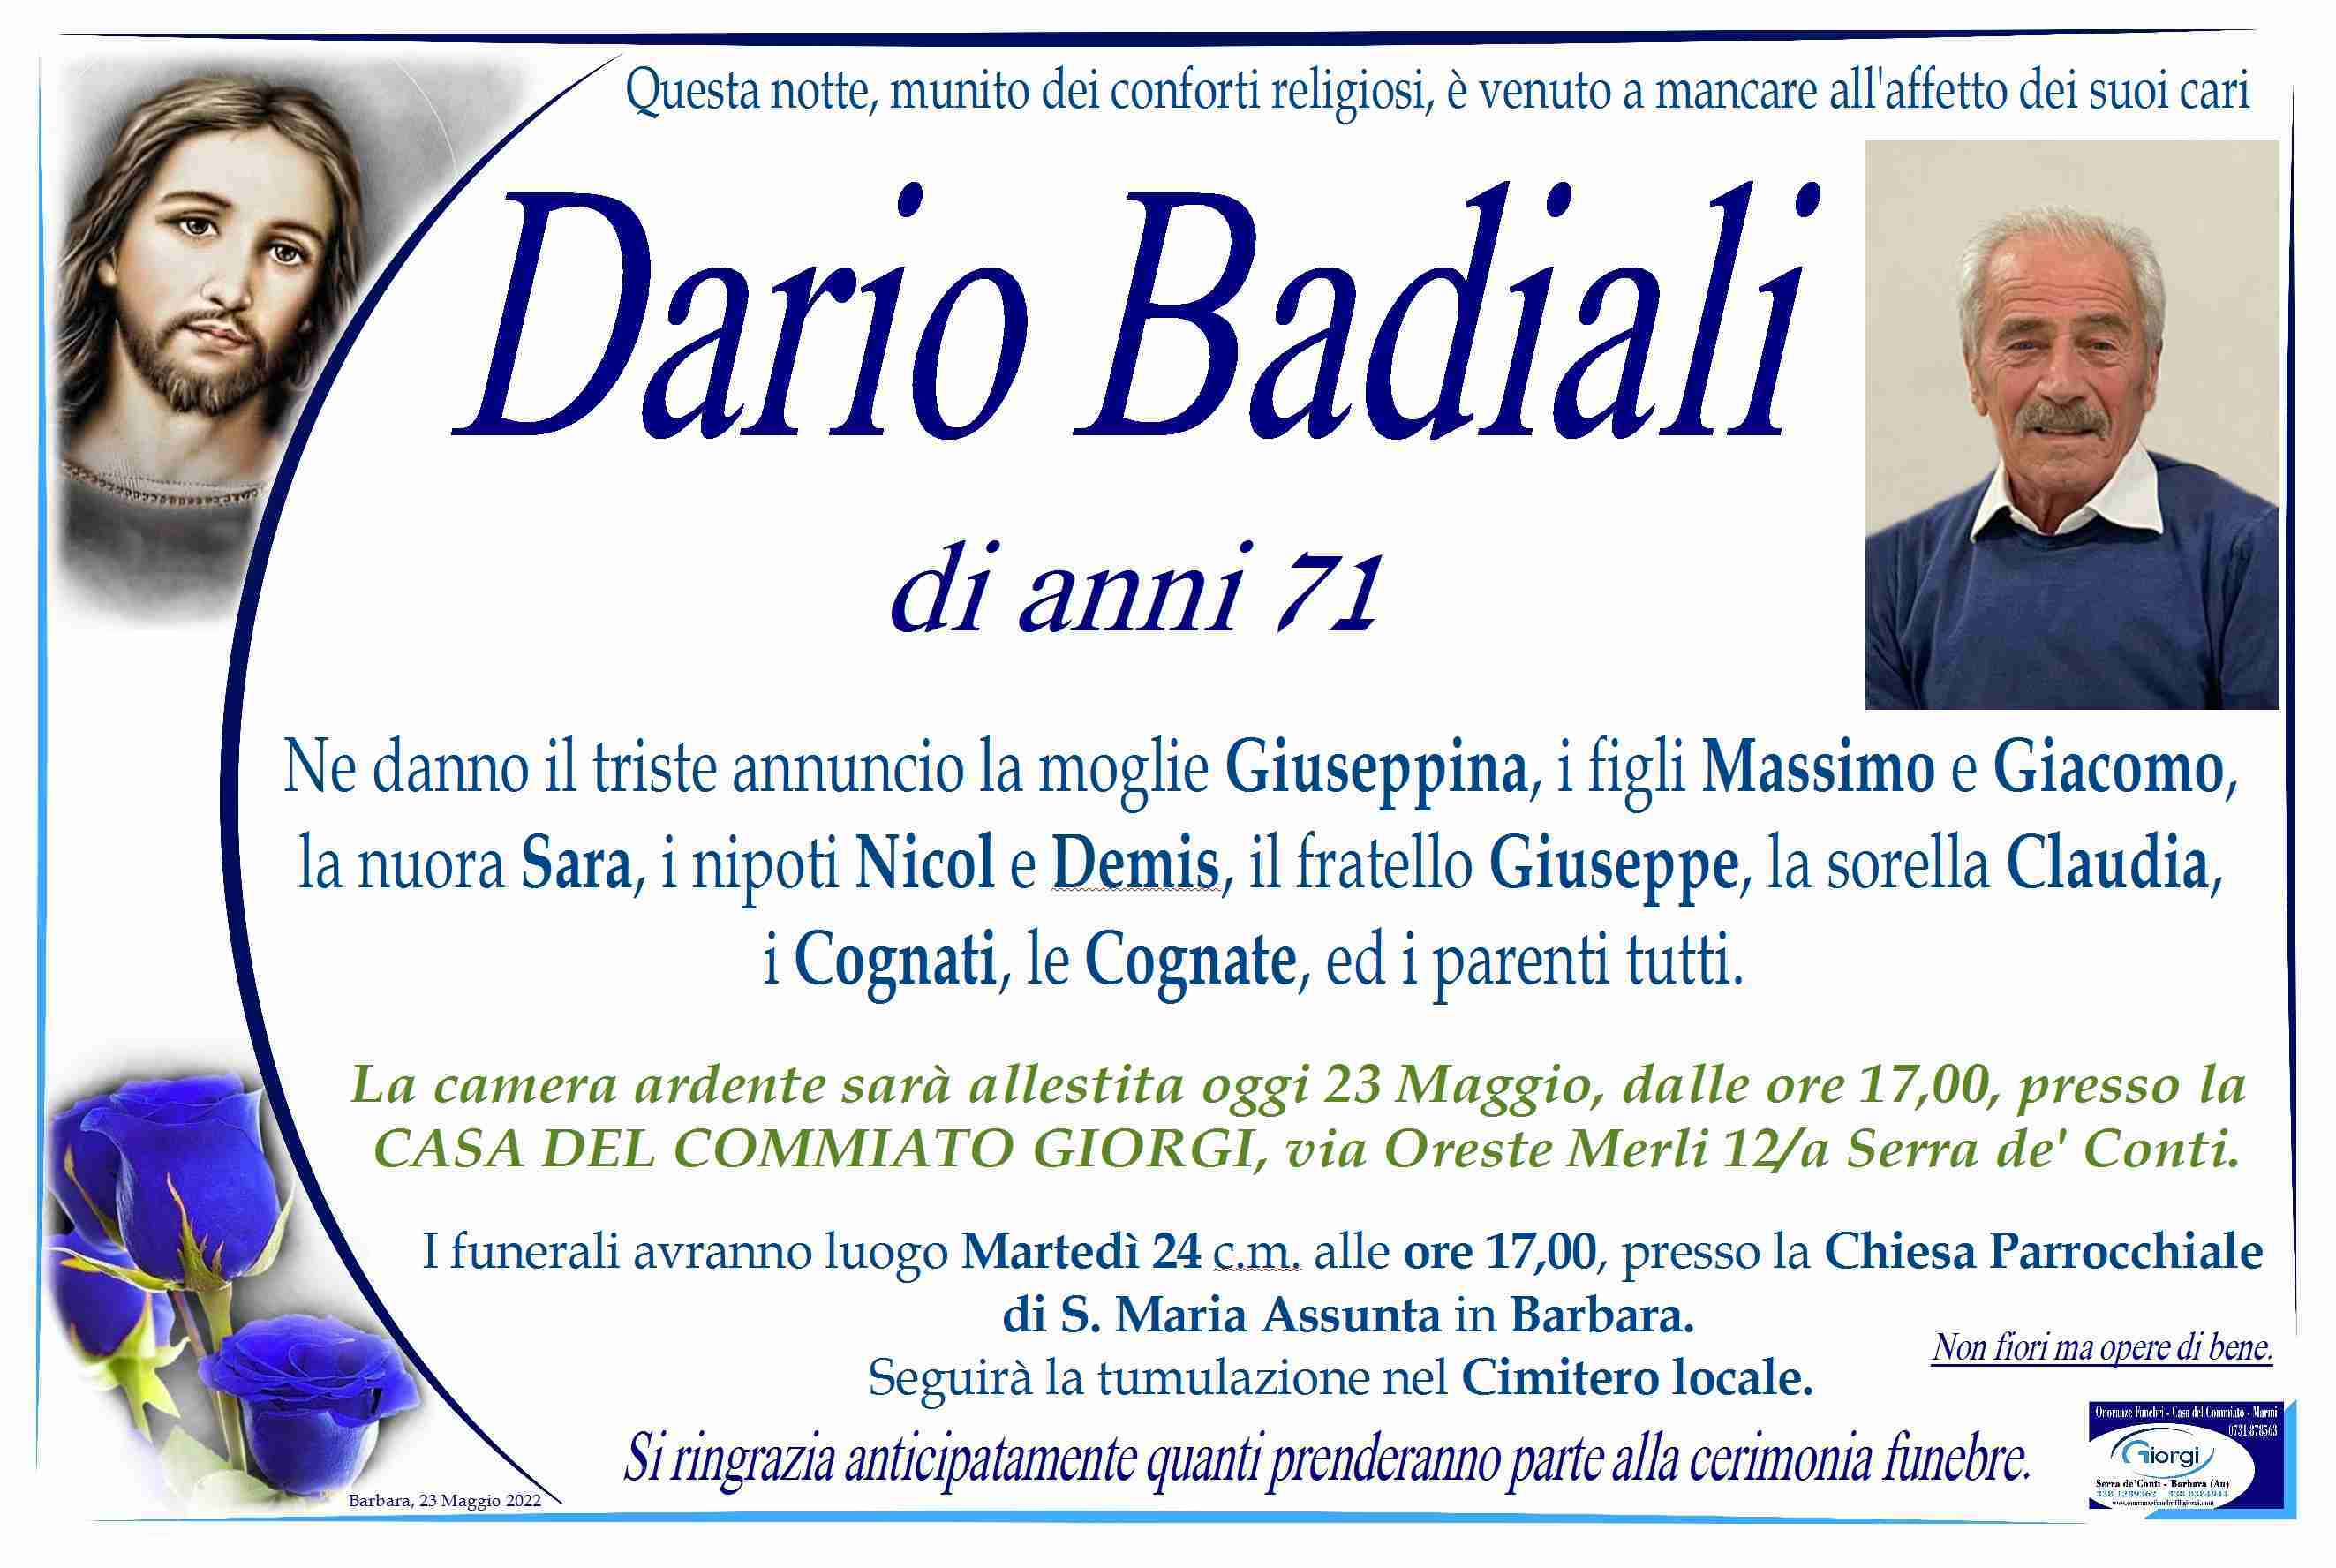 Dario Badiali